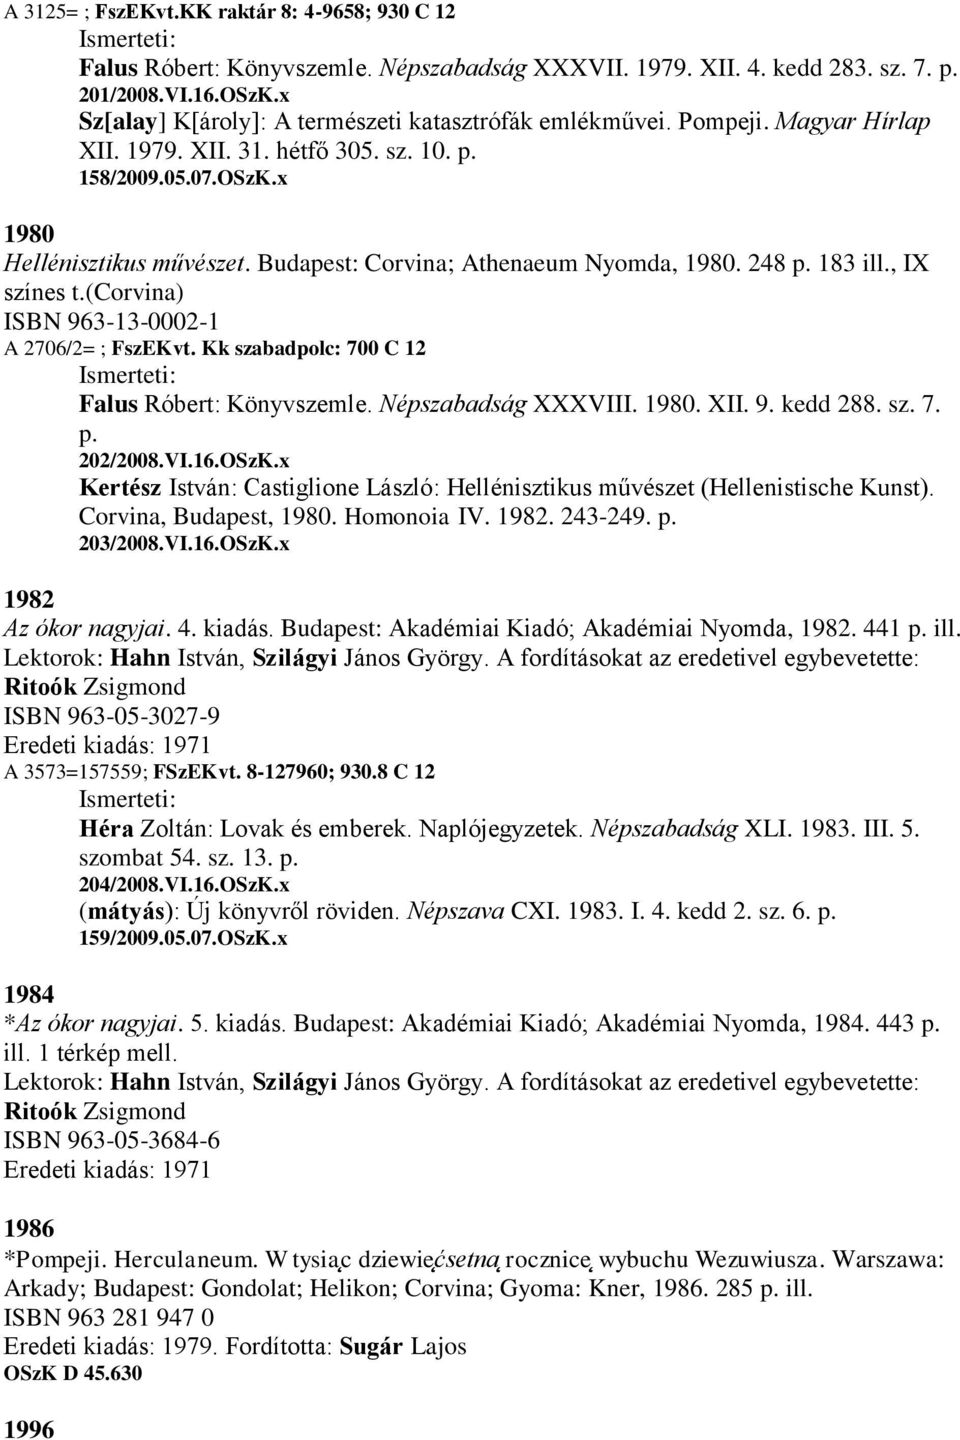 Budapest: Corvina; Athenaeum Nyomda, 1980. 248 p. 183 ill., IX színes t.(corvina) ISBN 963-13-0002-1 A 2706/2= ; FszEKvt. Kk szabadpolc: 700 C 12 Falus Róbert: Könyvszemle. Népszabadság XXXVIII. 1980. XII.